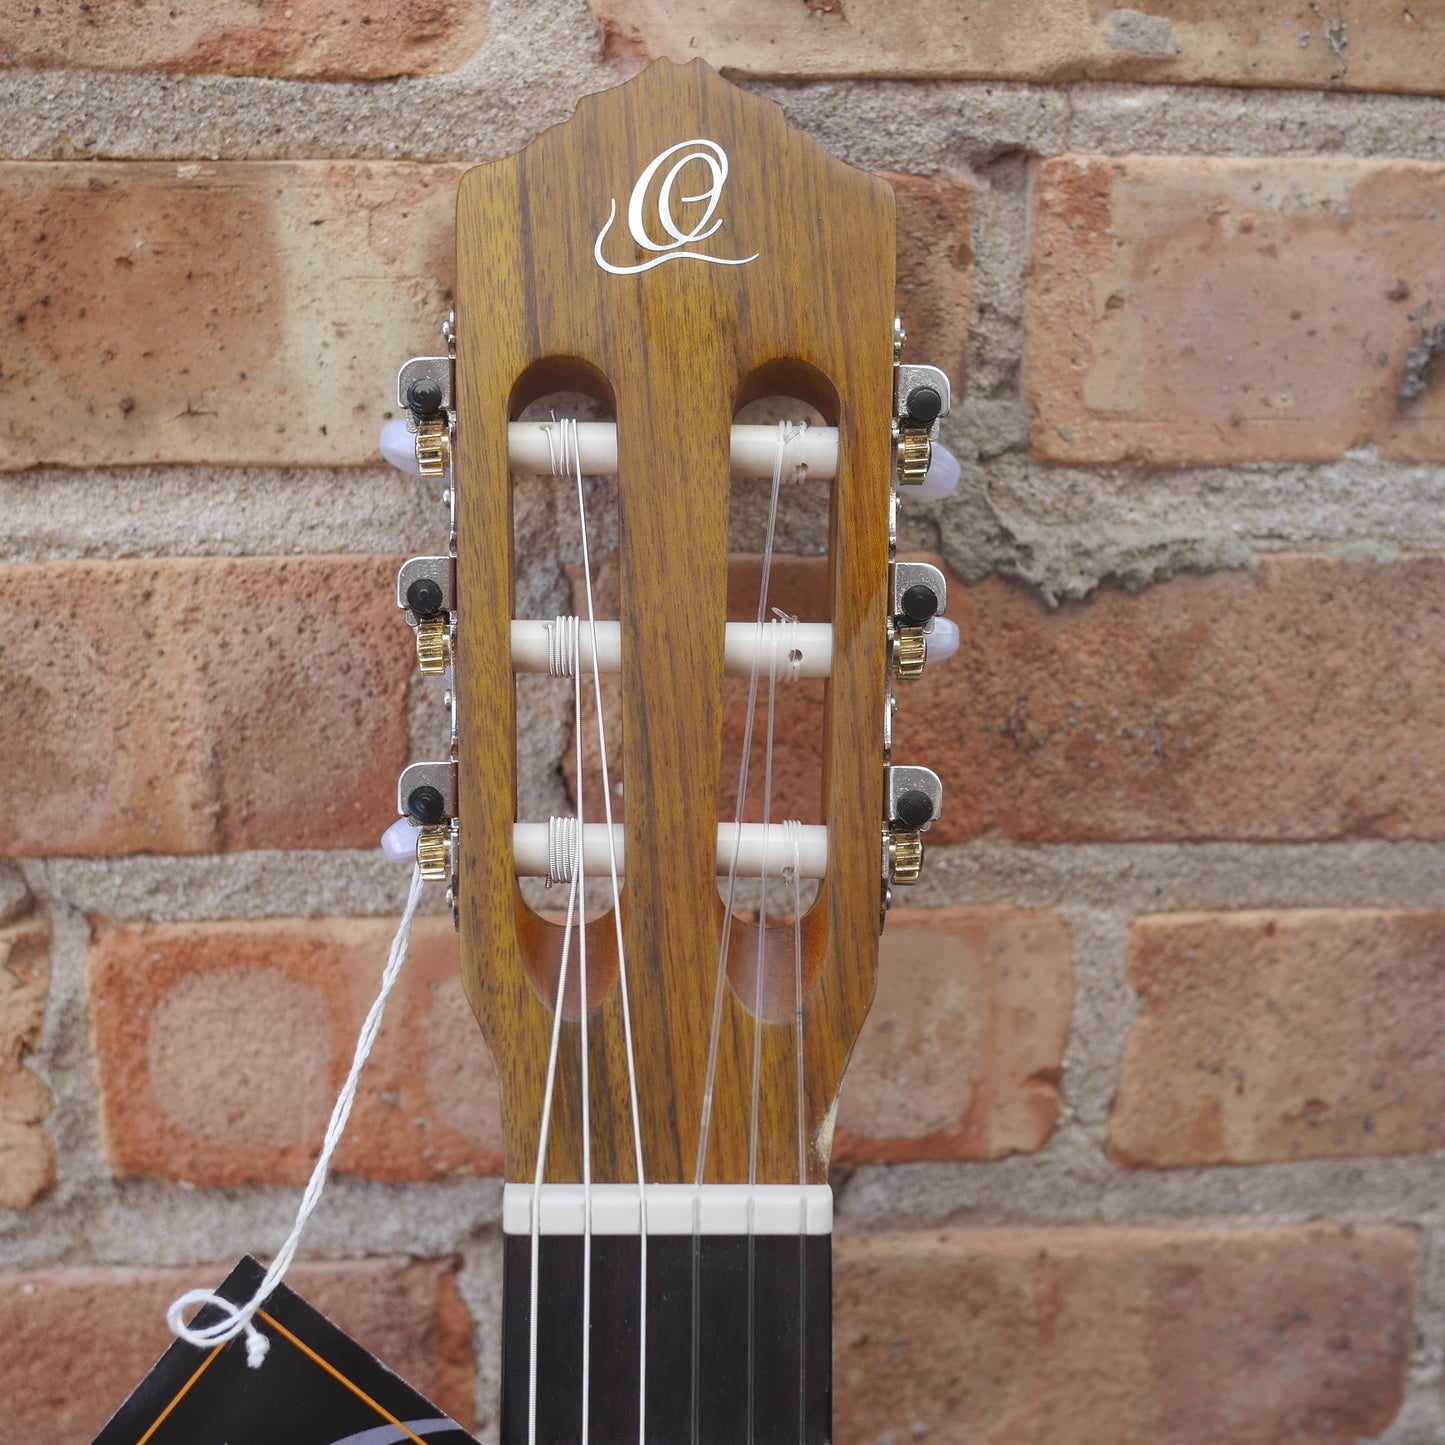 Ortega Family Series Full Size Nylon String Guitar